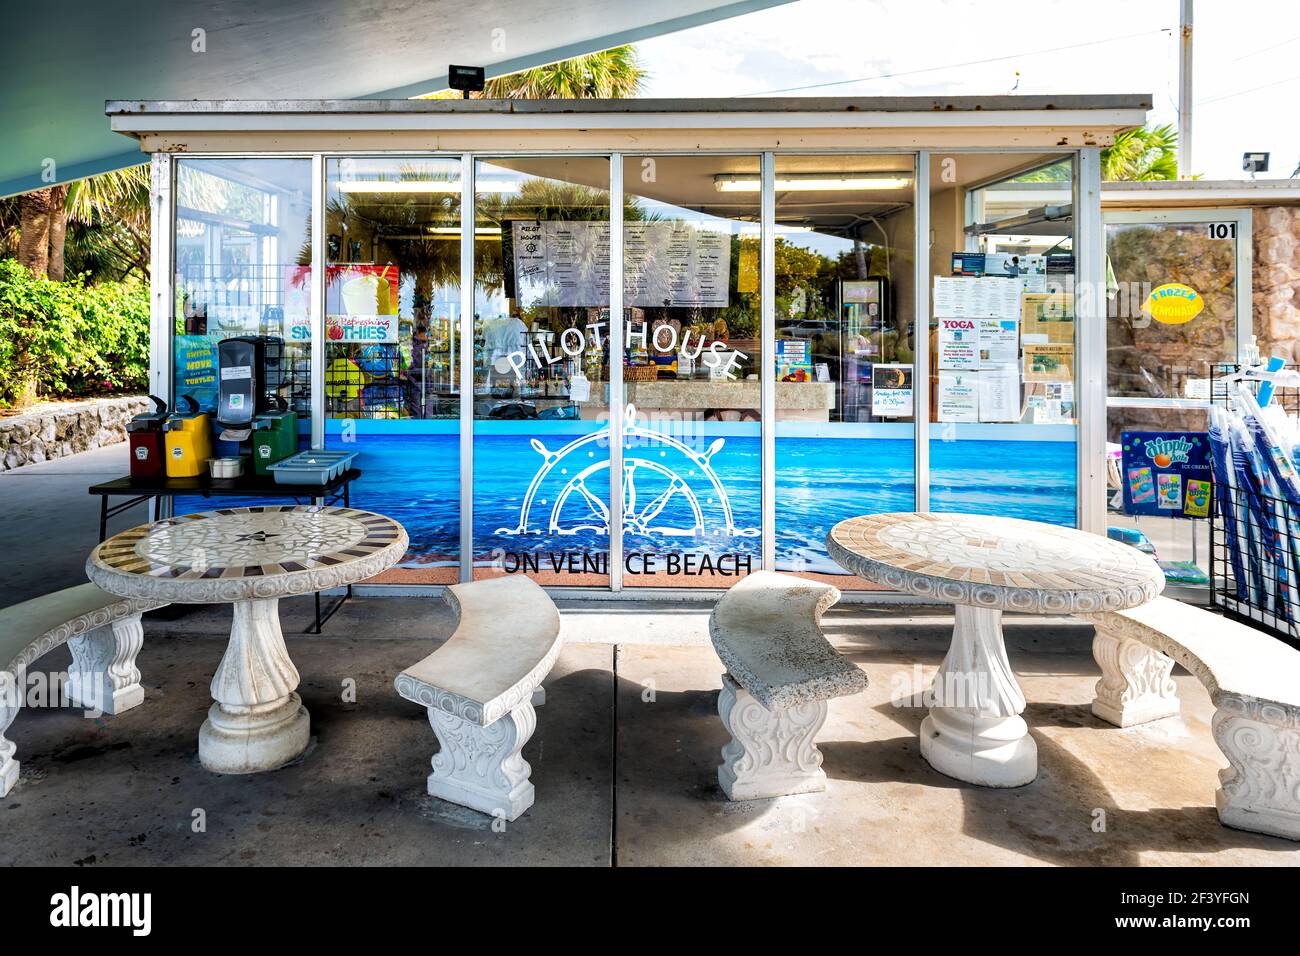 Venedig, USA - 29. April 2018: Pilot House Cafe Restaurant kleines Café mit Außensitzbereich mit Bank und Tischen, die frisches Essen servieren, smoot Stockfoto